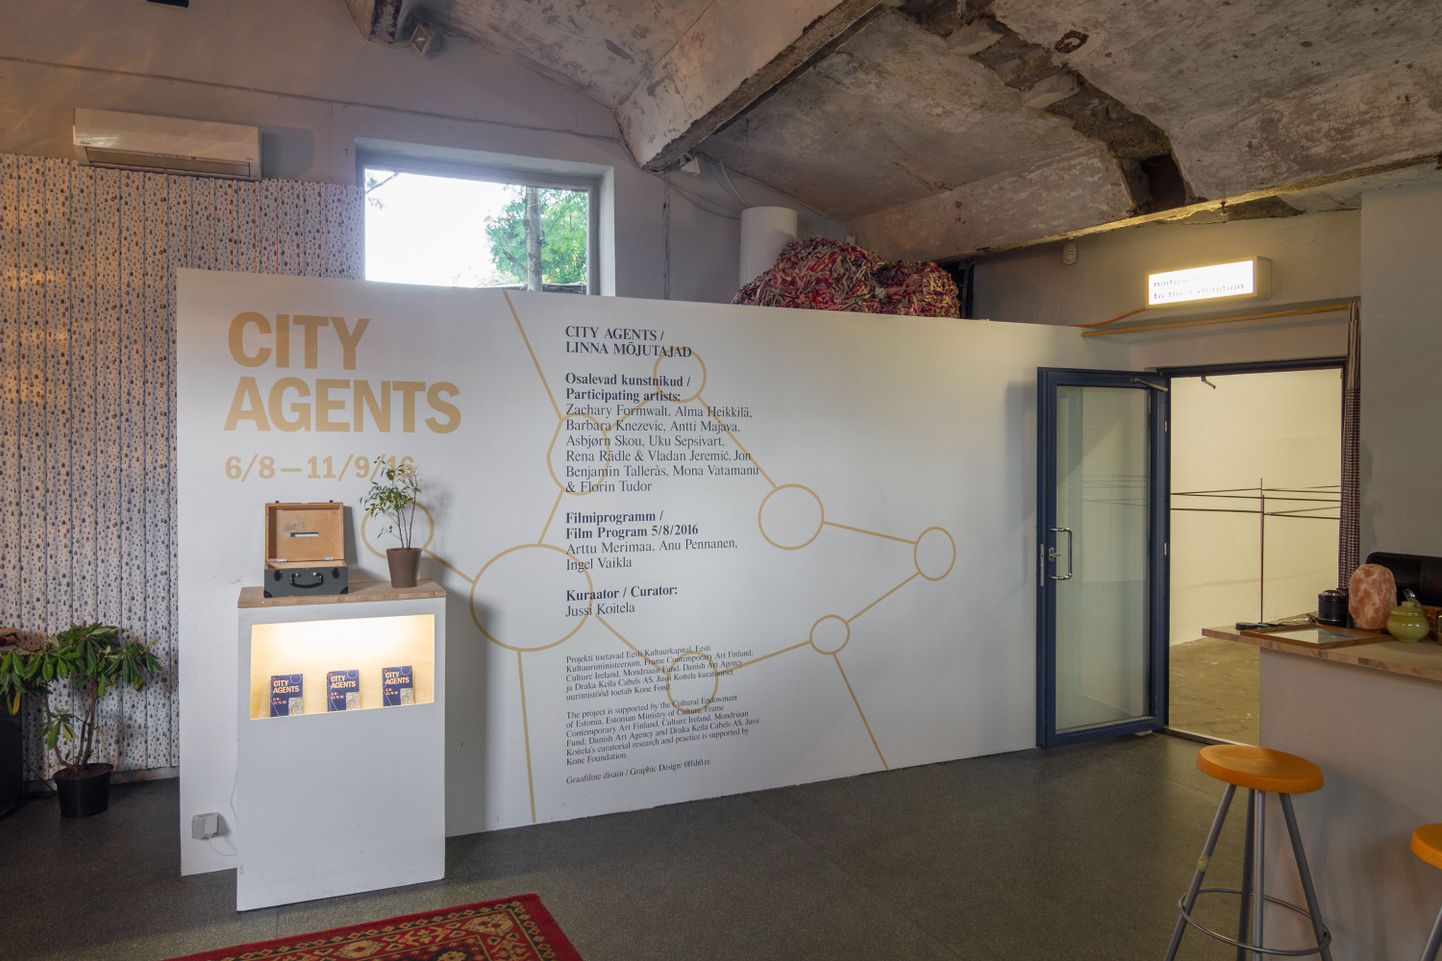 Näituseprojekt «Linna mõjutajad» («City Agents») käsitleb näituse keskkonda ja kaasaegset linnaruumi kui kapitali akumuleerumise kohti.